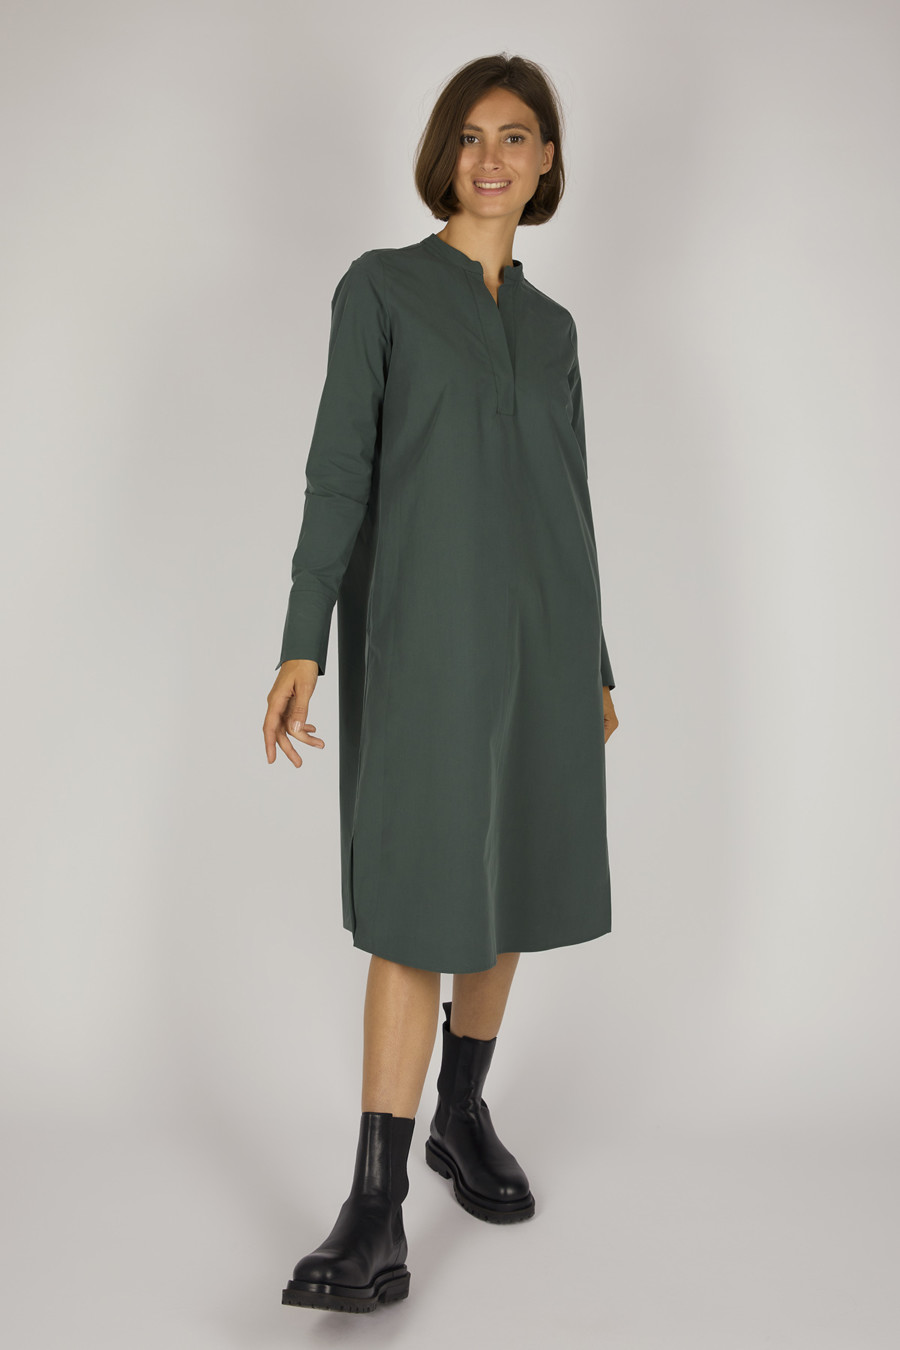 ETTA – Wadenlanges Baumwollkleid – Farbe: Moss